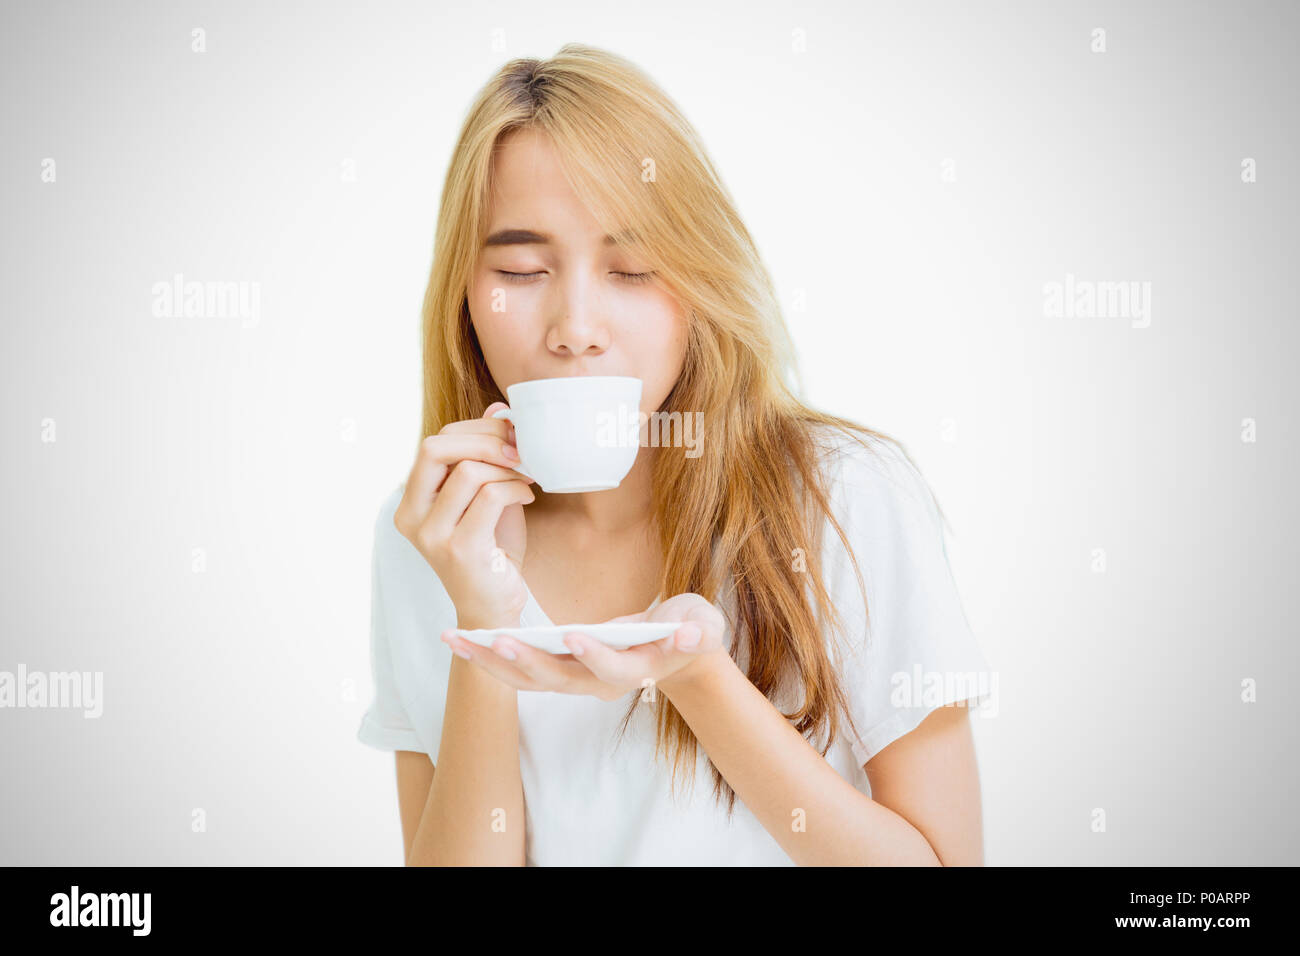 Girl Teen holding tazza da caffè per bere il caffè su sfondo bianco Foto Stock